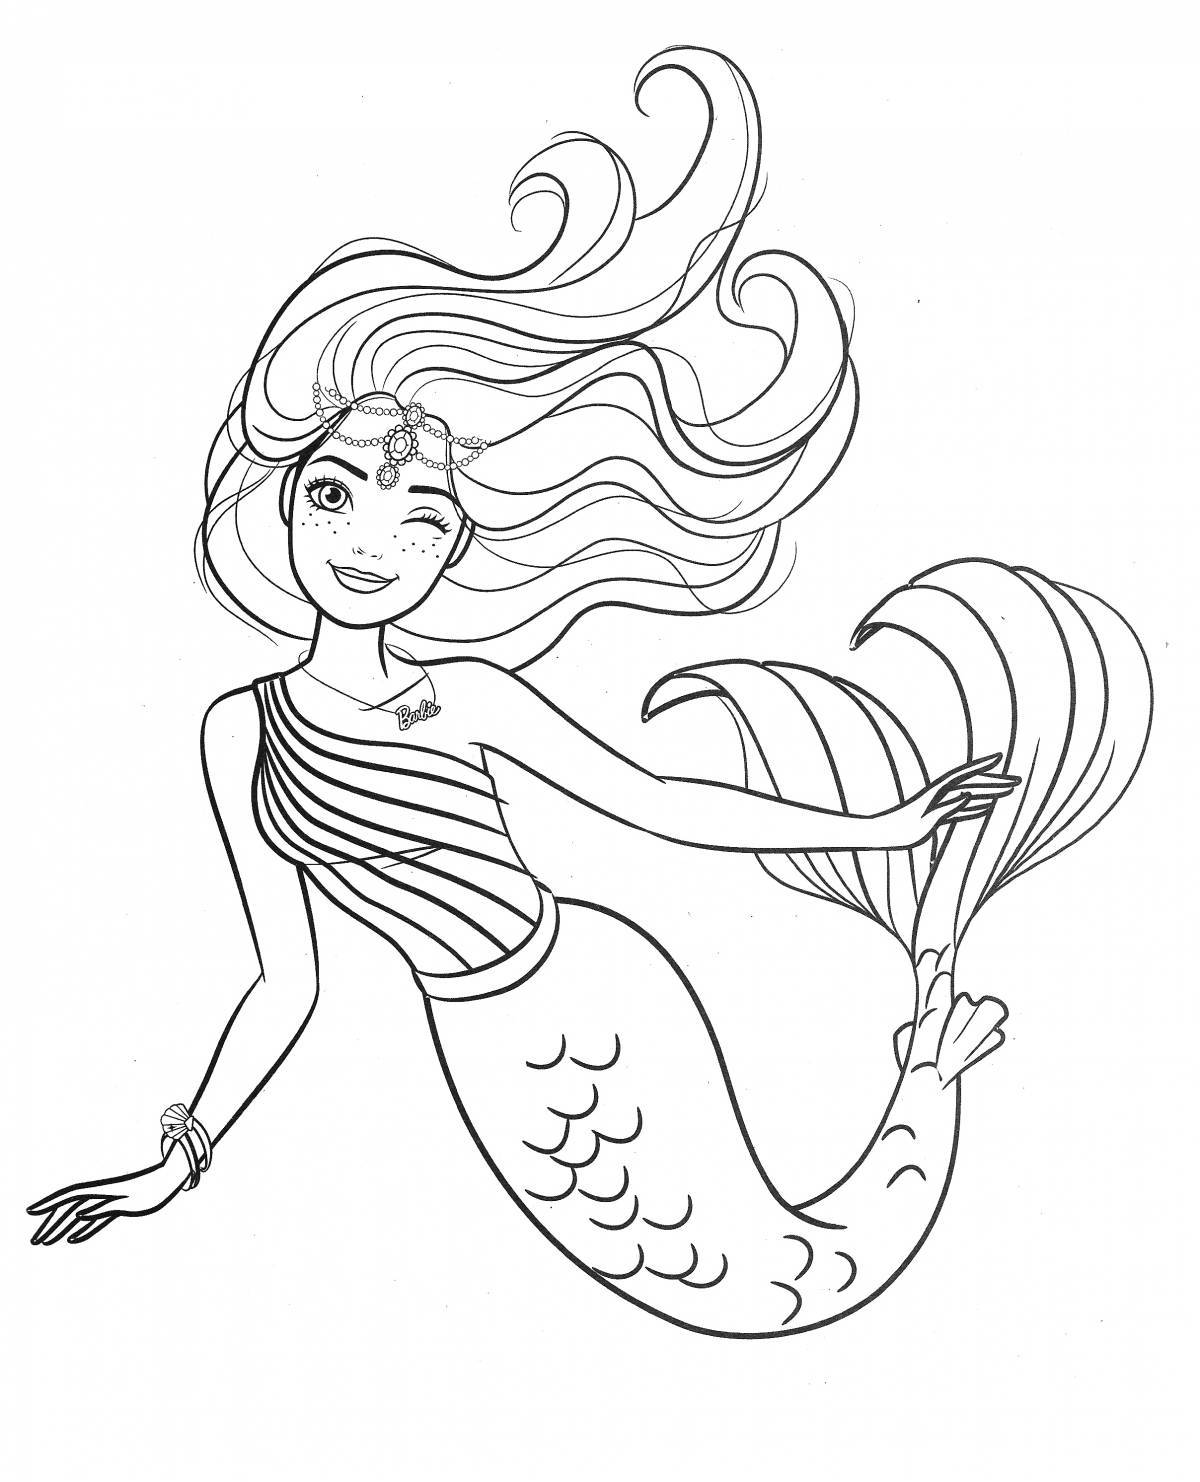 Exquisite mermaid coloring book